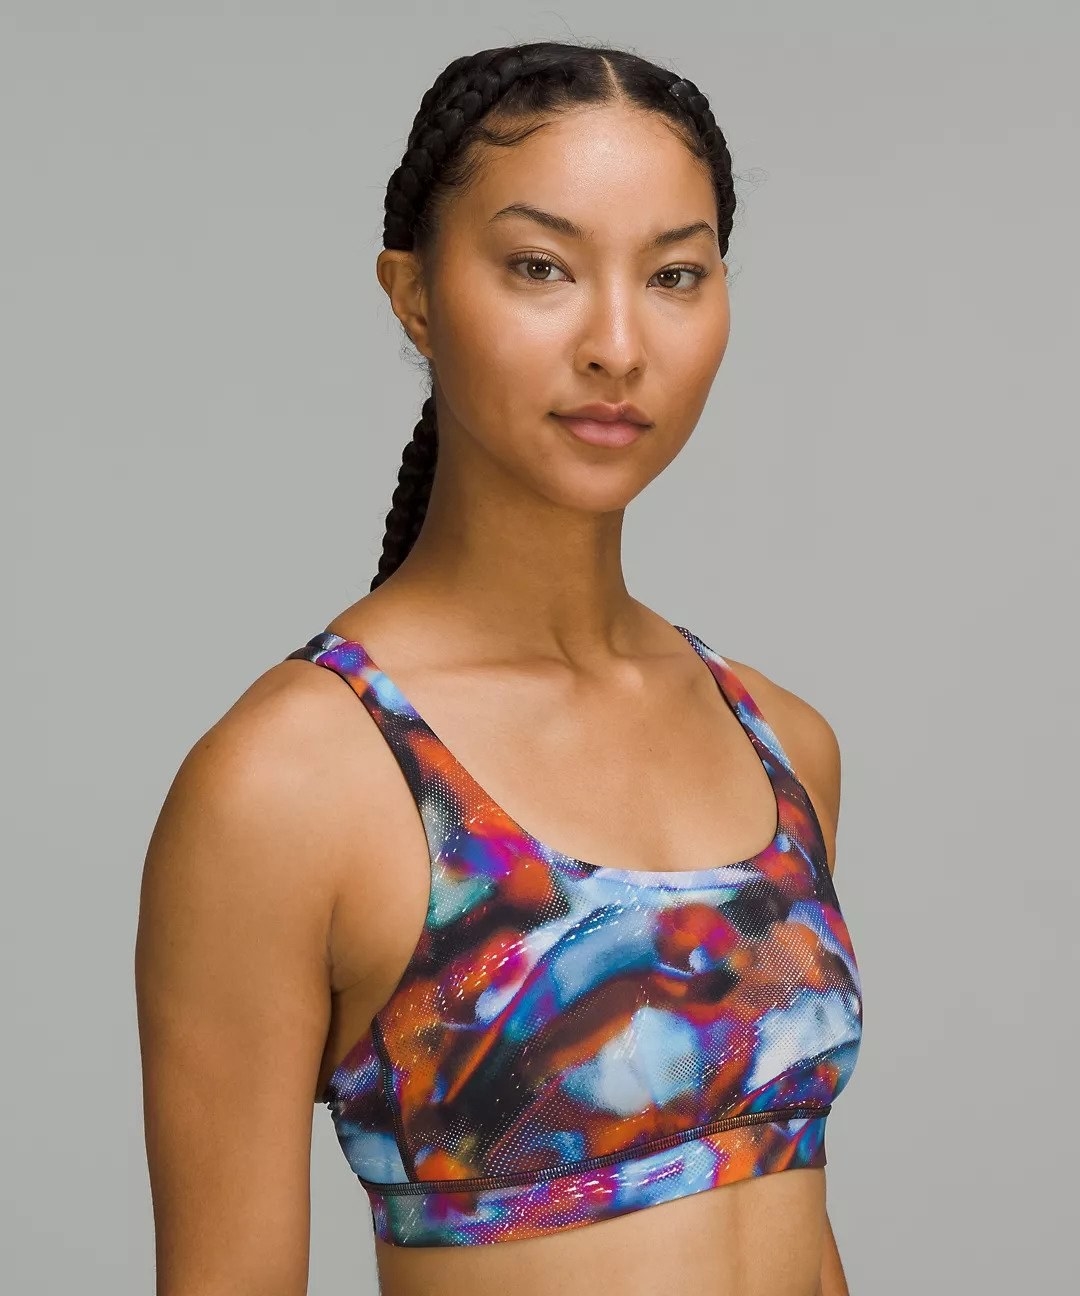 model wearing the sports bra